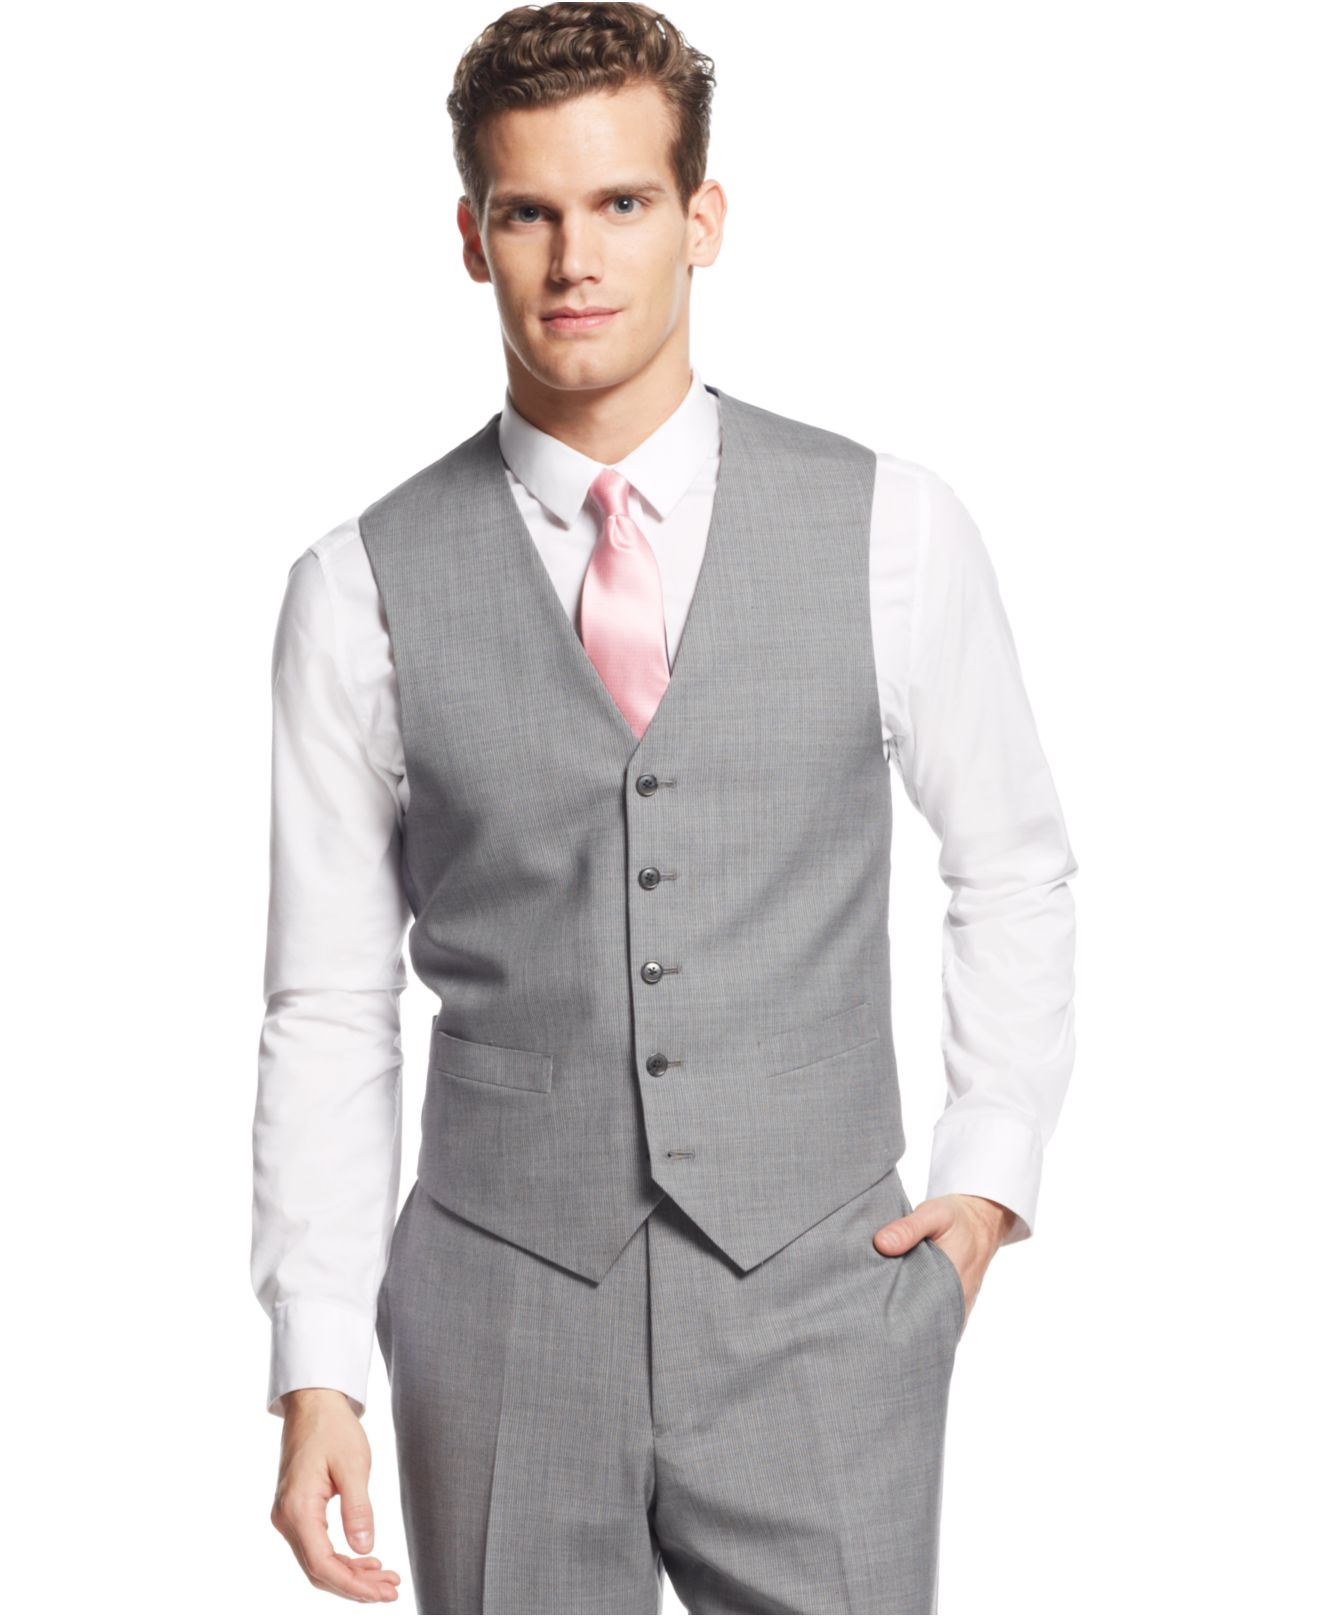 Lyst - Tommy Hilfiger Light Grey Stripe Vested Suit in Gray for Men